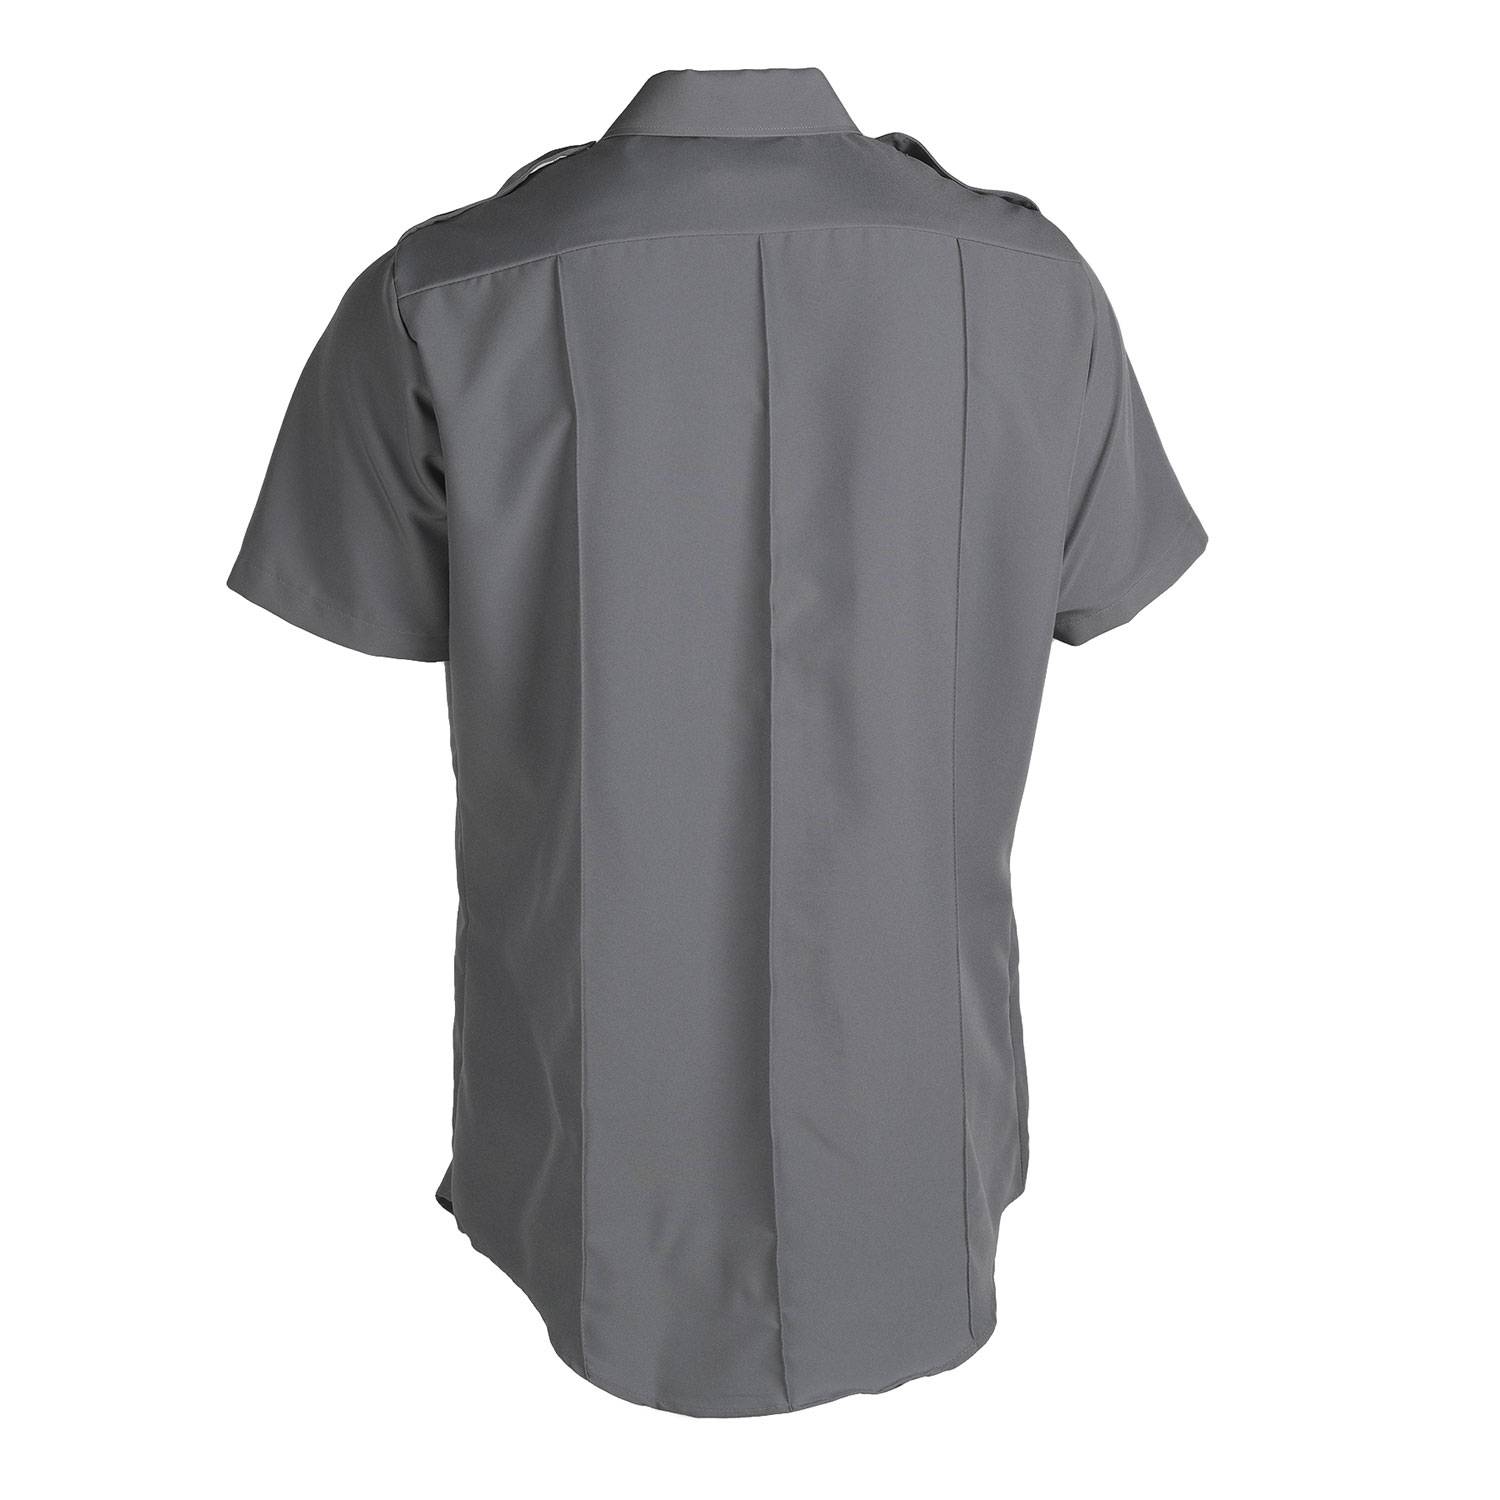 Leventhal Men's Class A Zippered Uniform Shirt